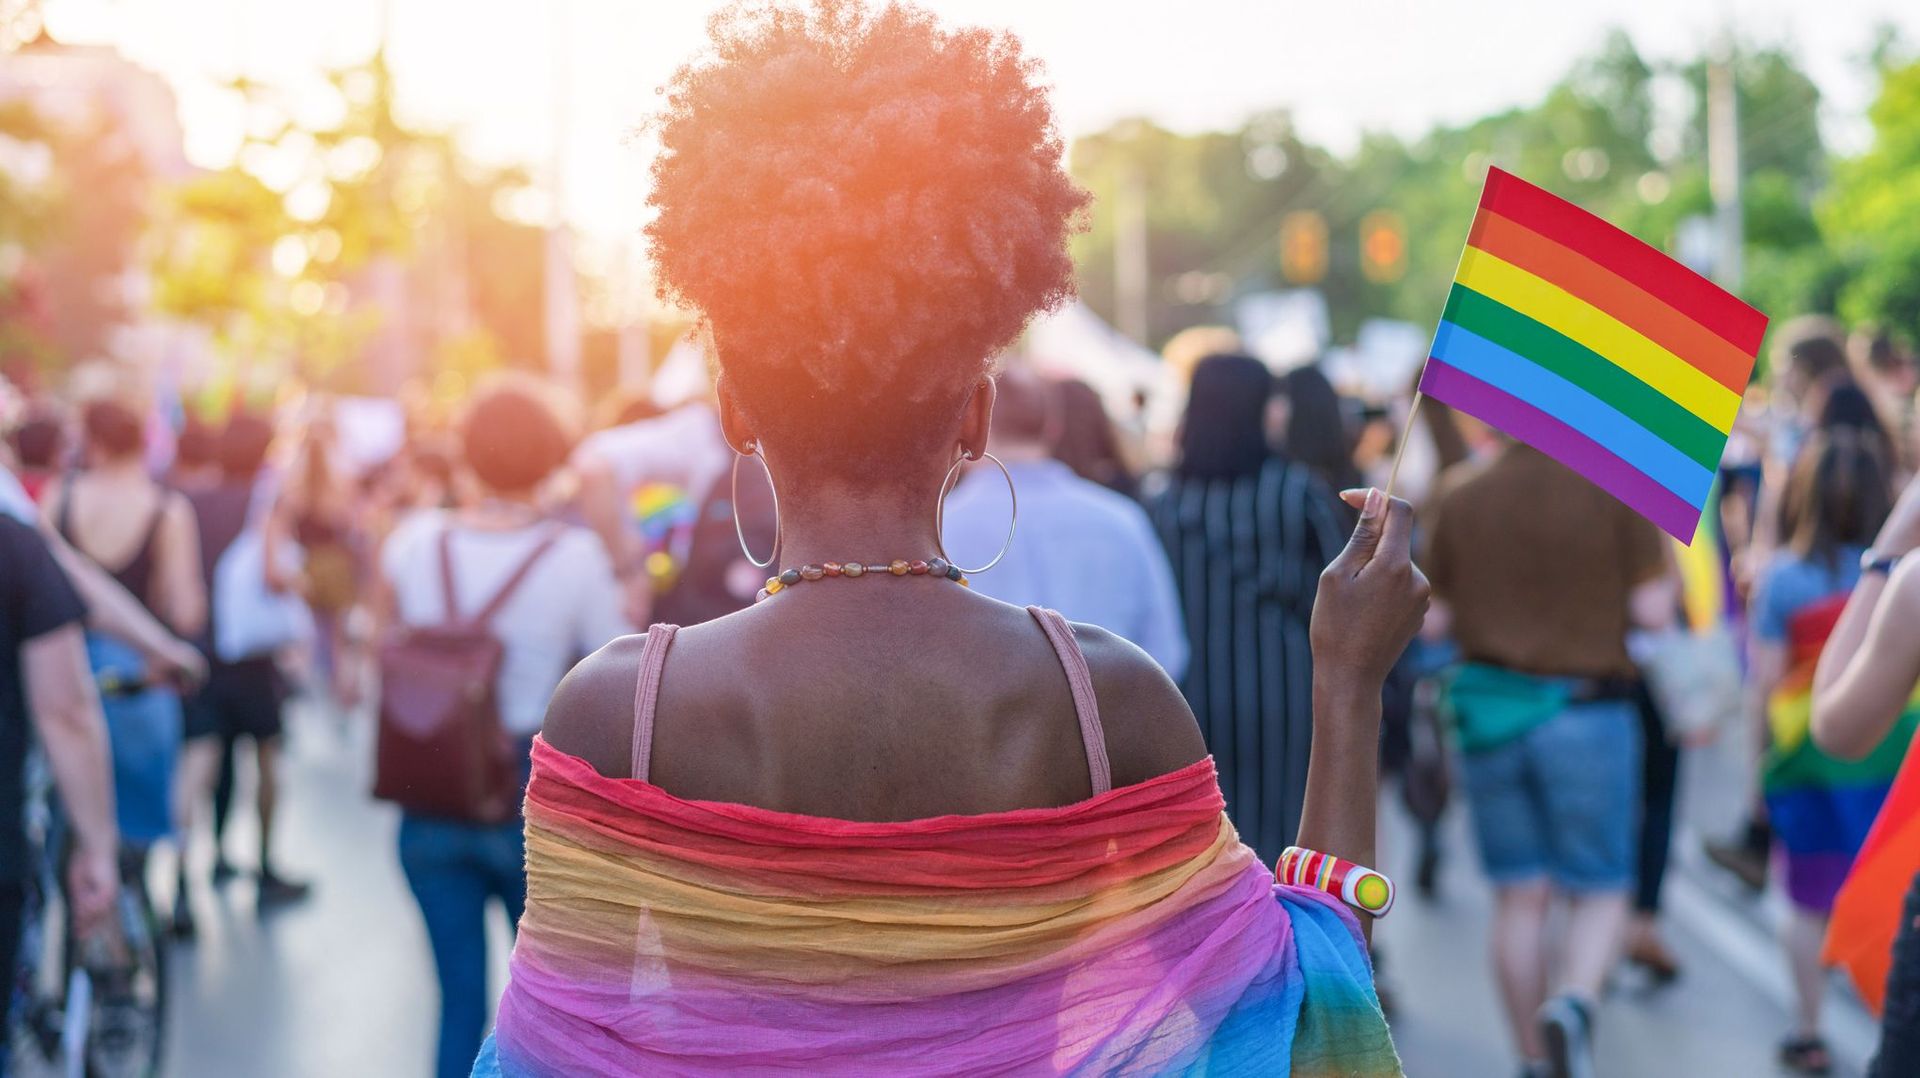 Plus de 4 personnes LGBTIQ sur 10 se sentent discriminées, la Commission européenne veut agir